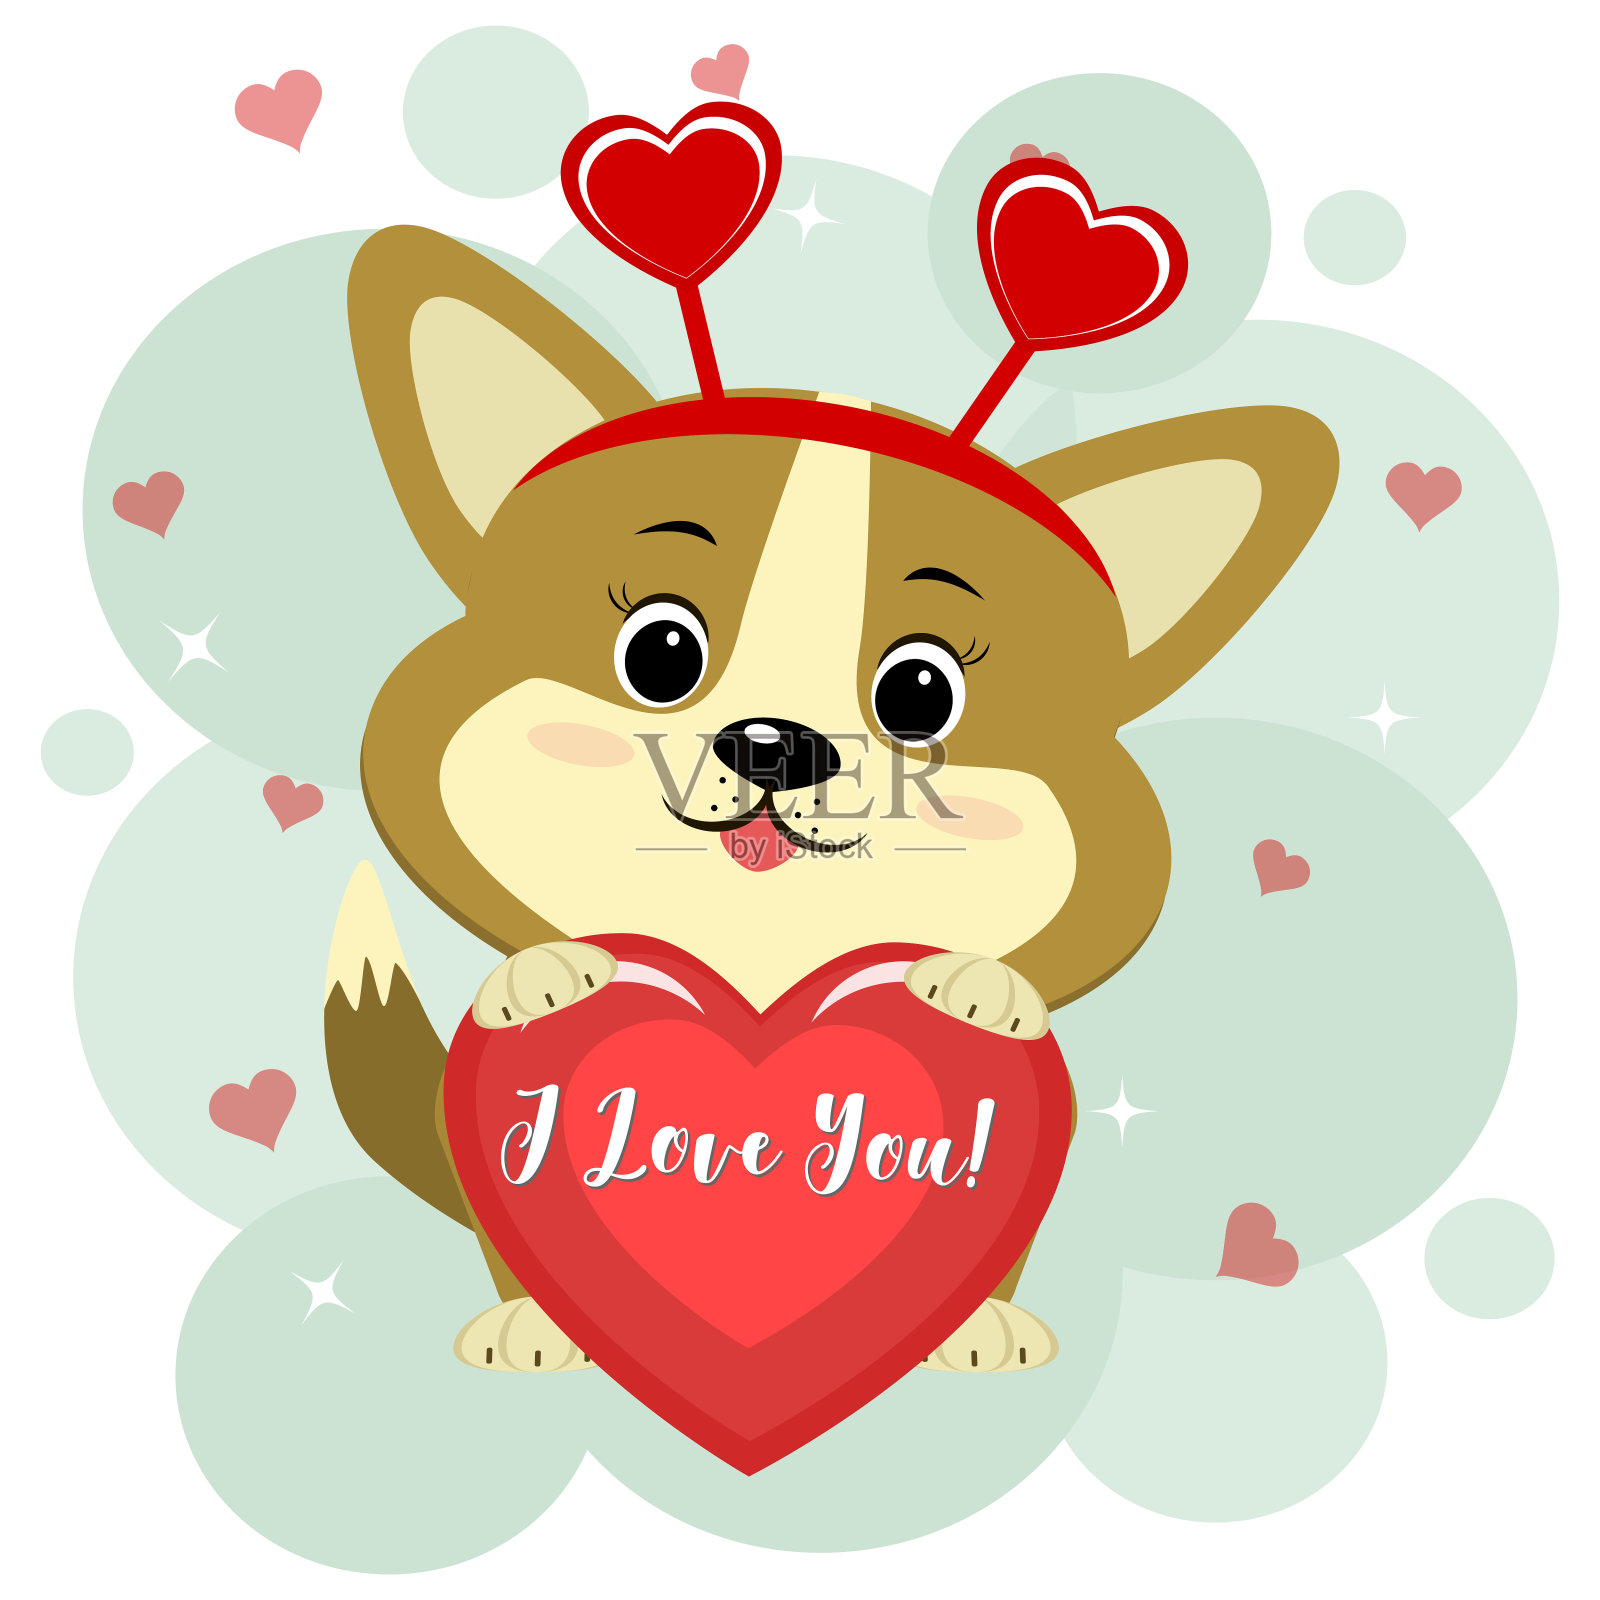 祝贺你，情人节快乐!可爱的柯基小狗坐在红色的边缘，爪子上握着一颗红色的心。平面设计，卡通风格，矢量插画图片素材